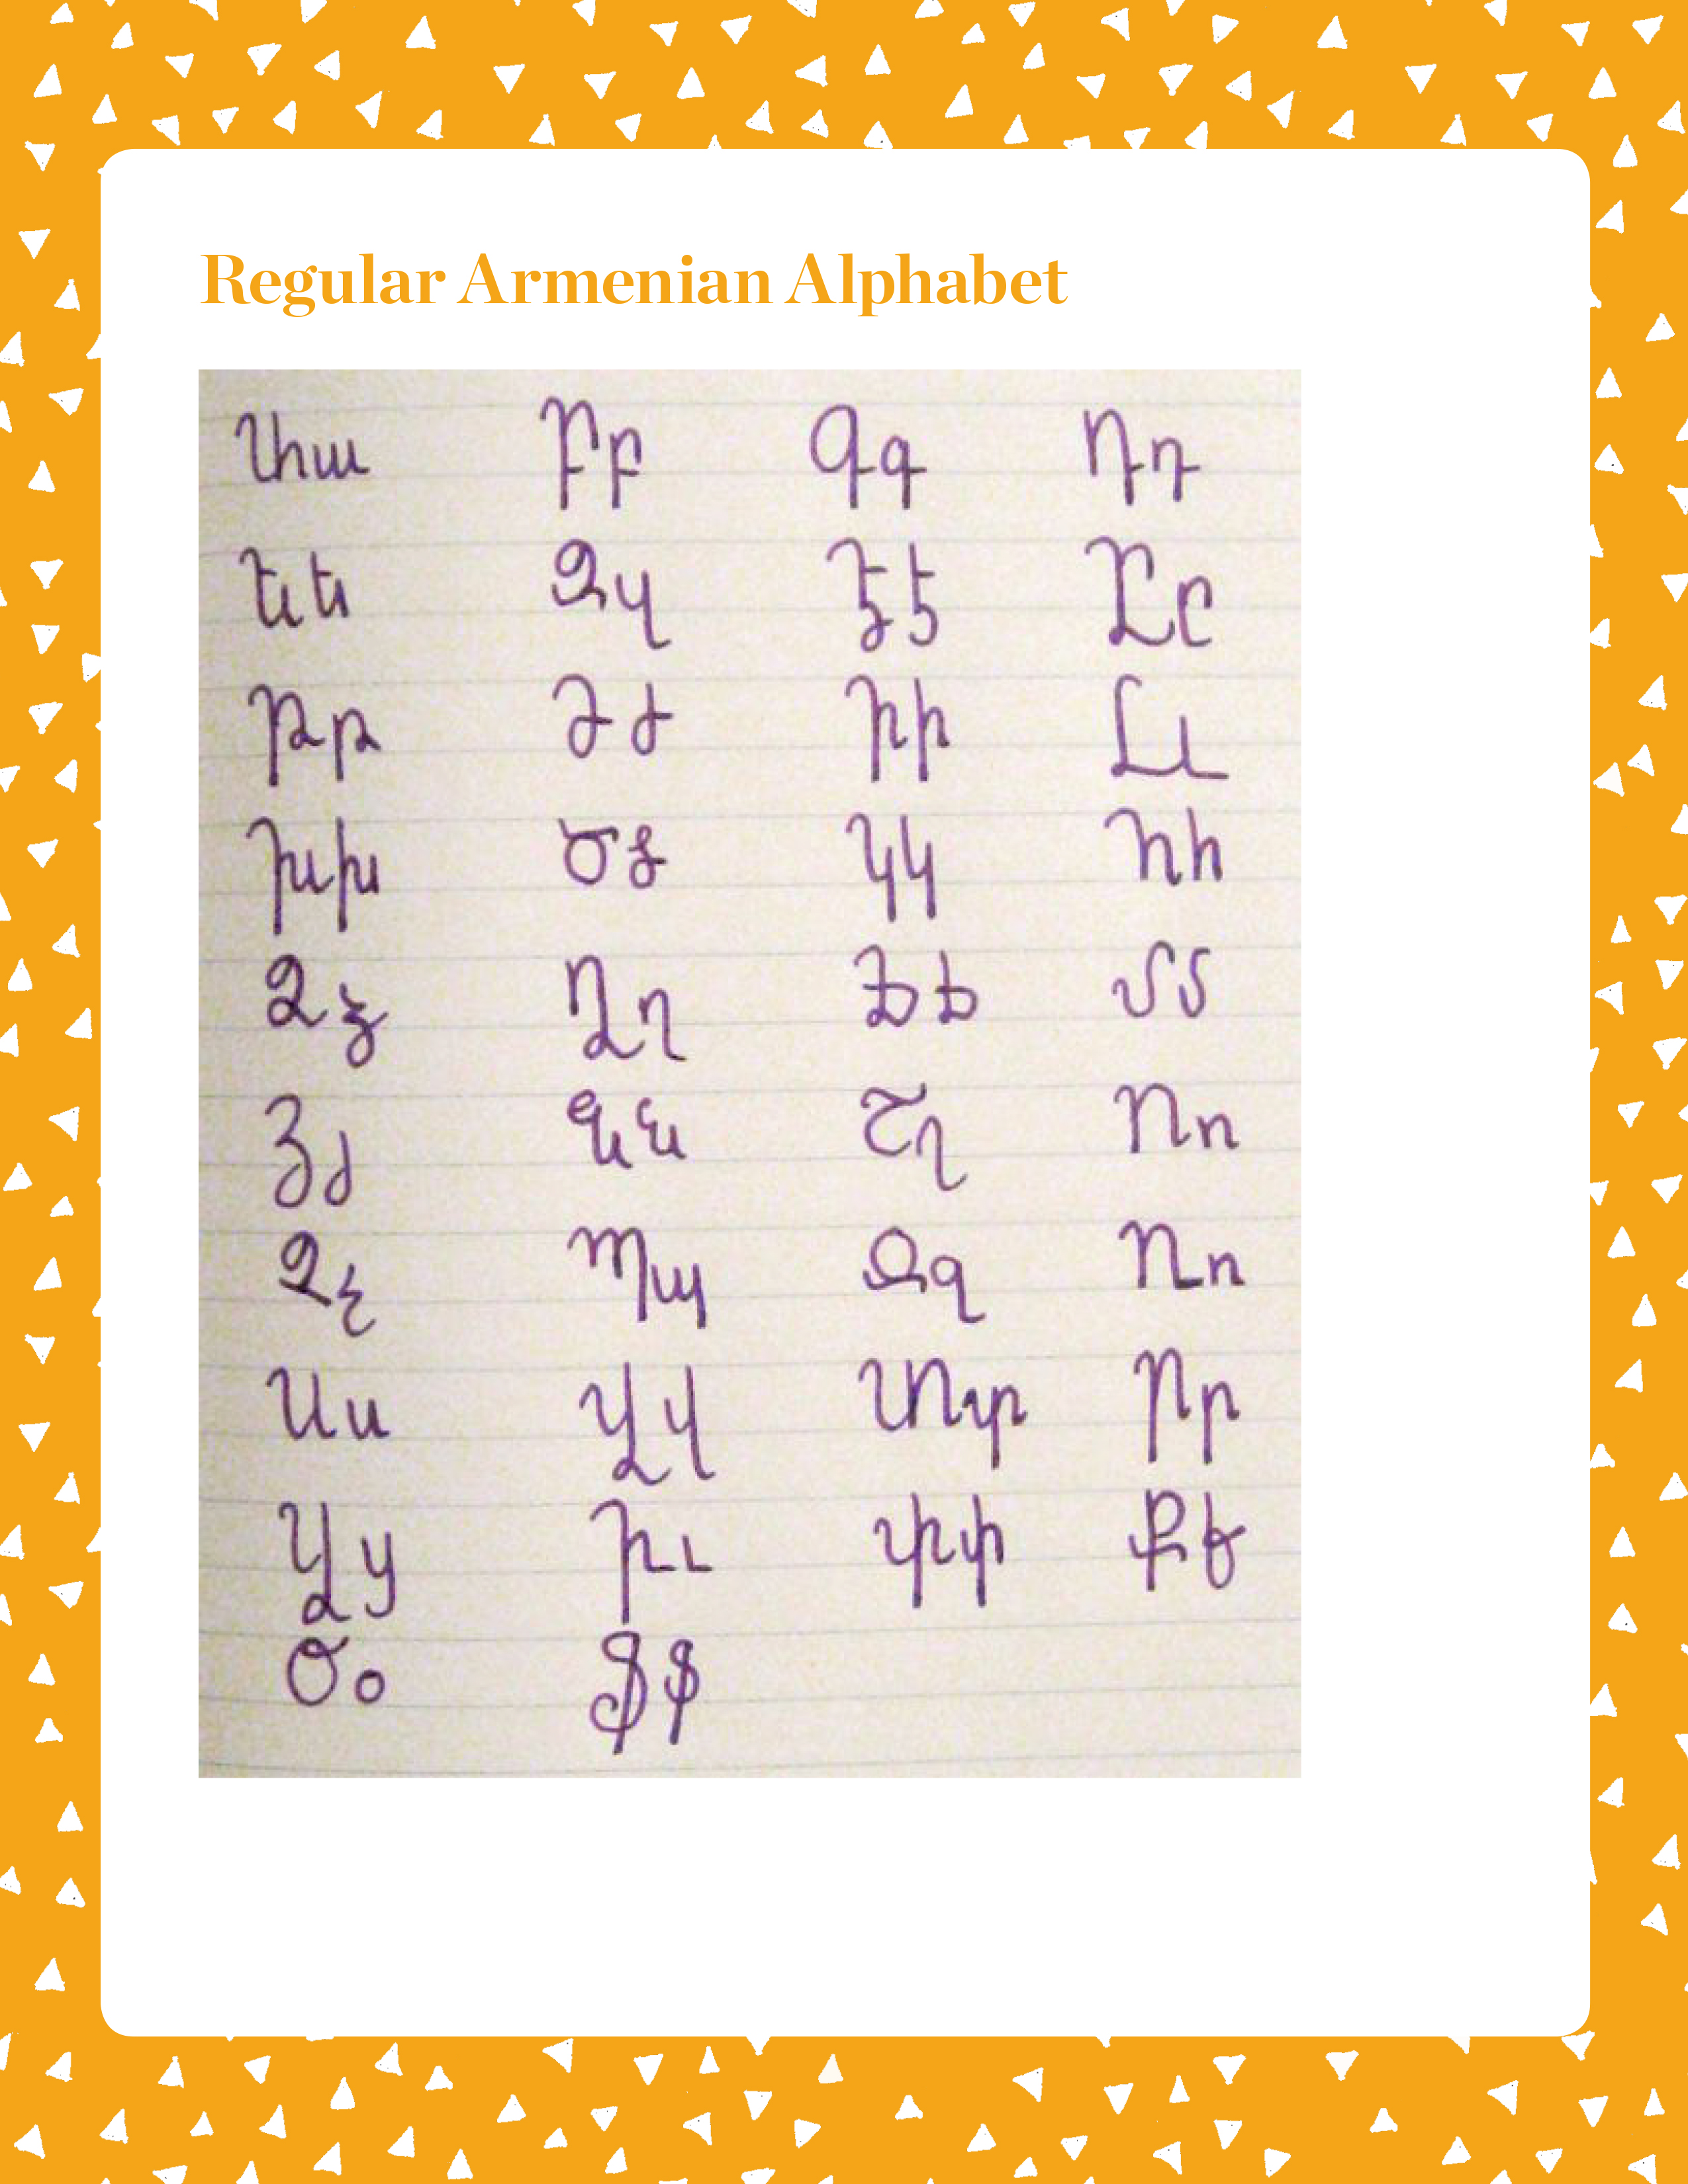 Armenian Alphabet activity